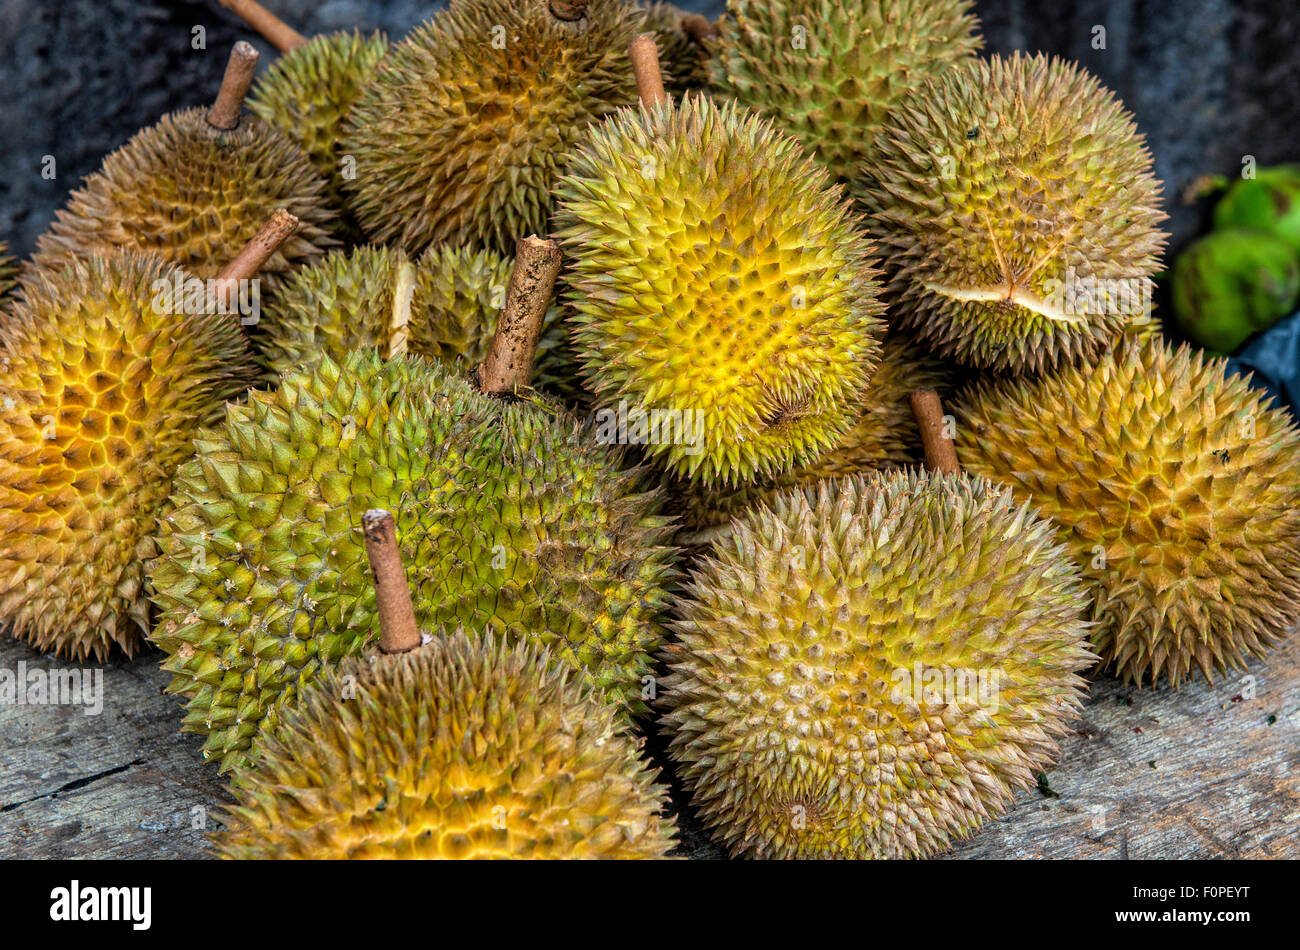 Durian Fruits in Kuala Lumpur, Malaysia Stock Photo